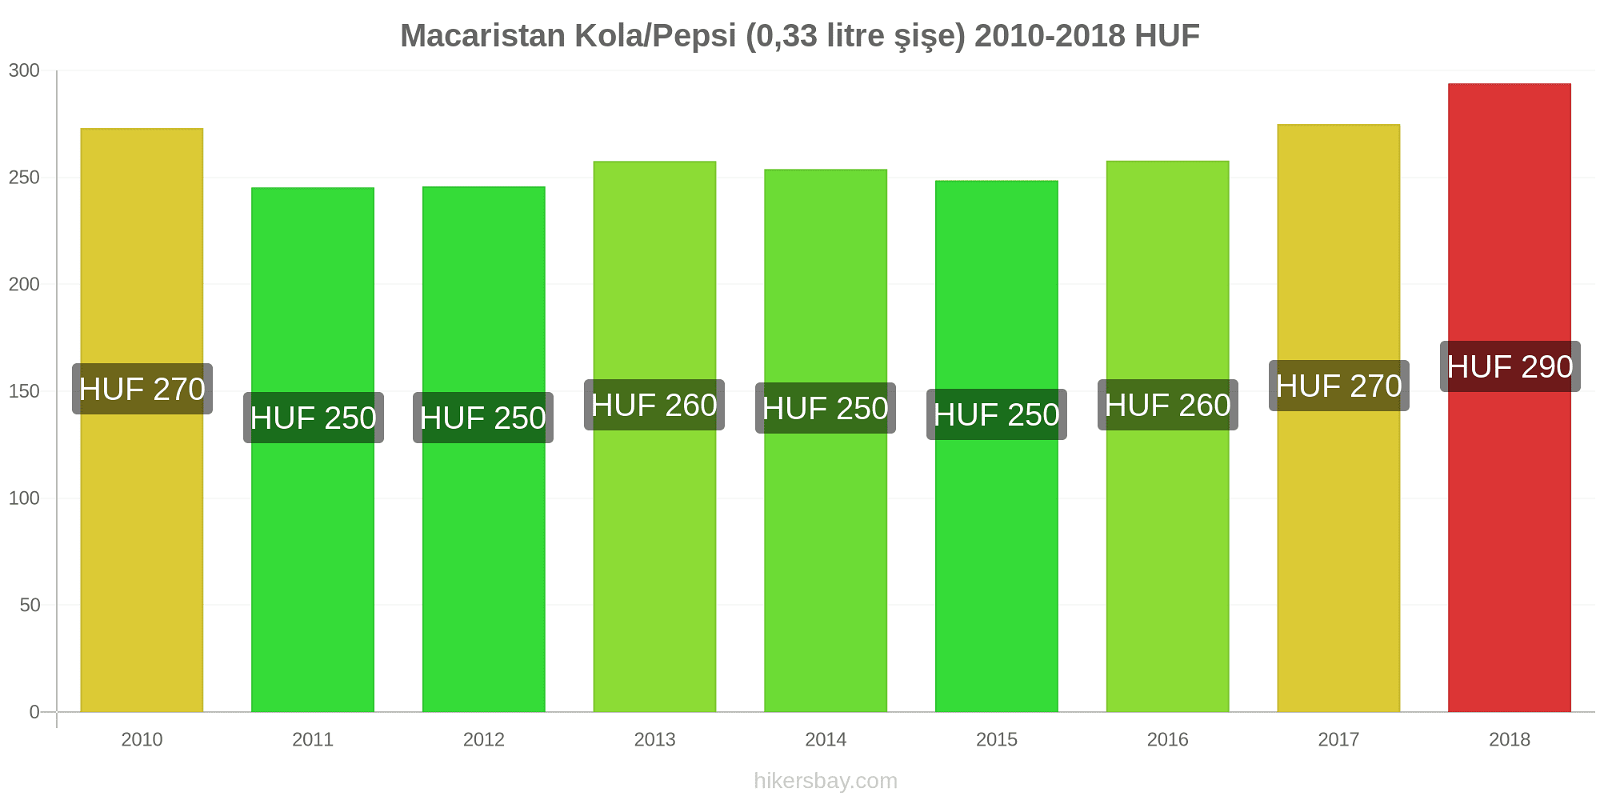 Macaristan fiyat değişiklikleri Kola/Pepsi (0.33 litre şişe) hikersbay.com